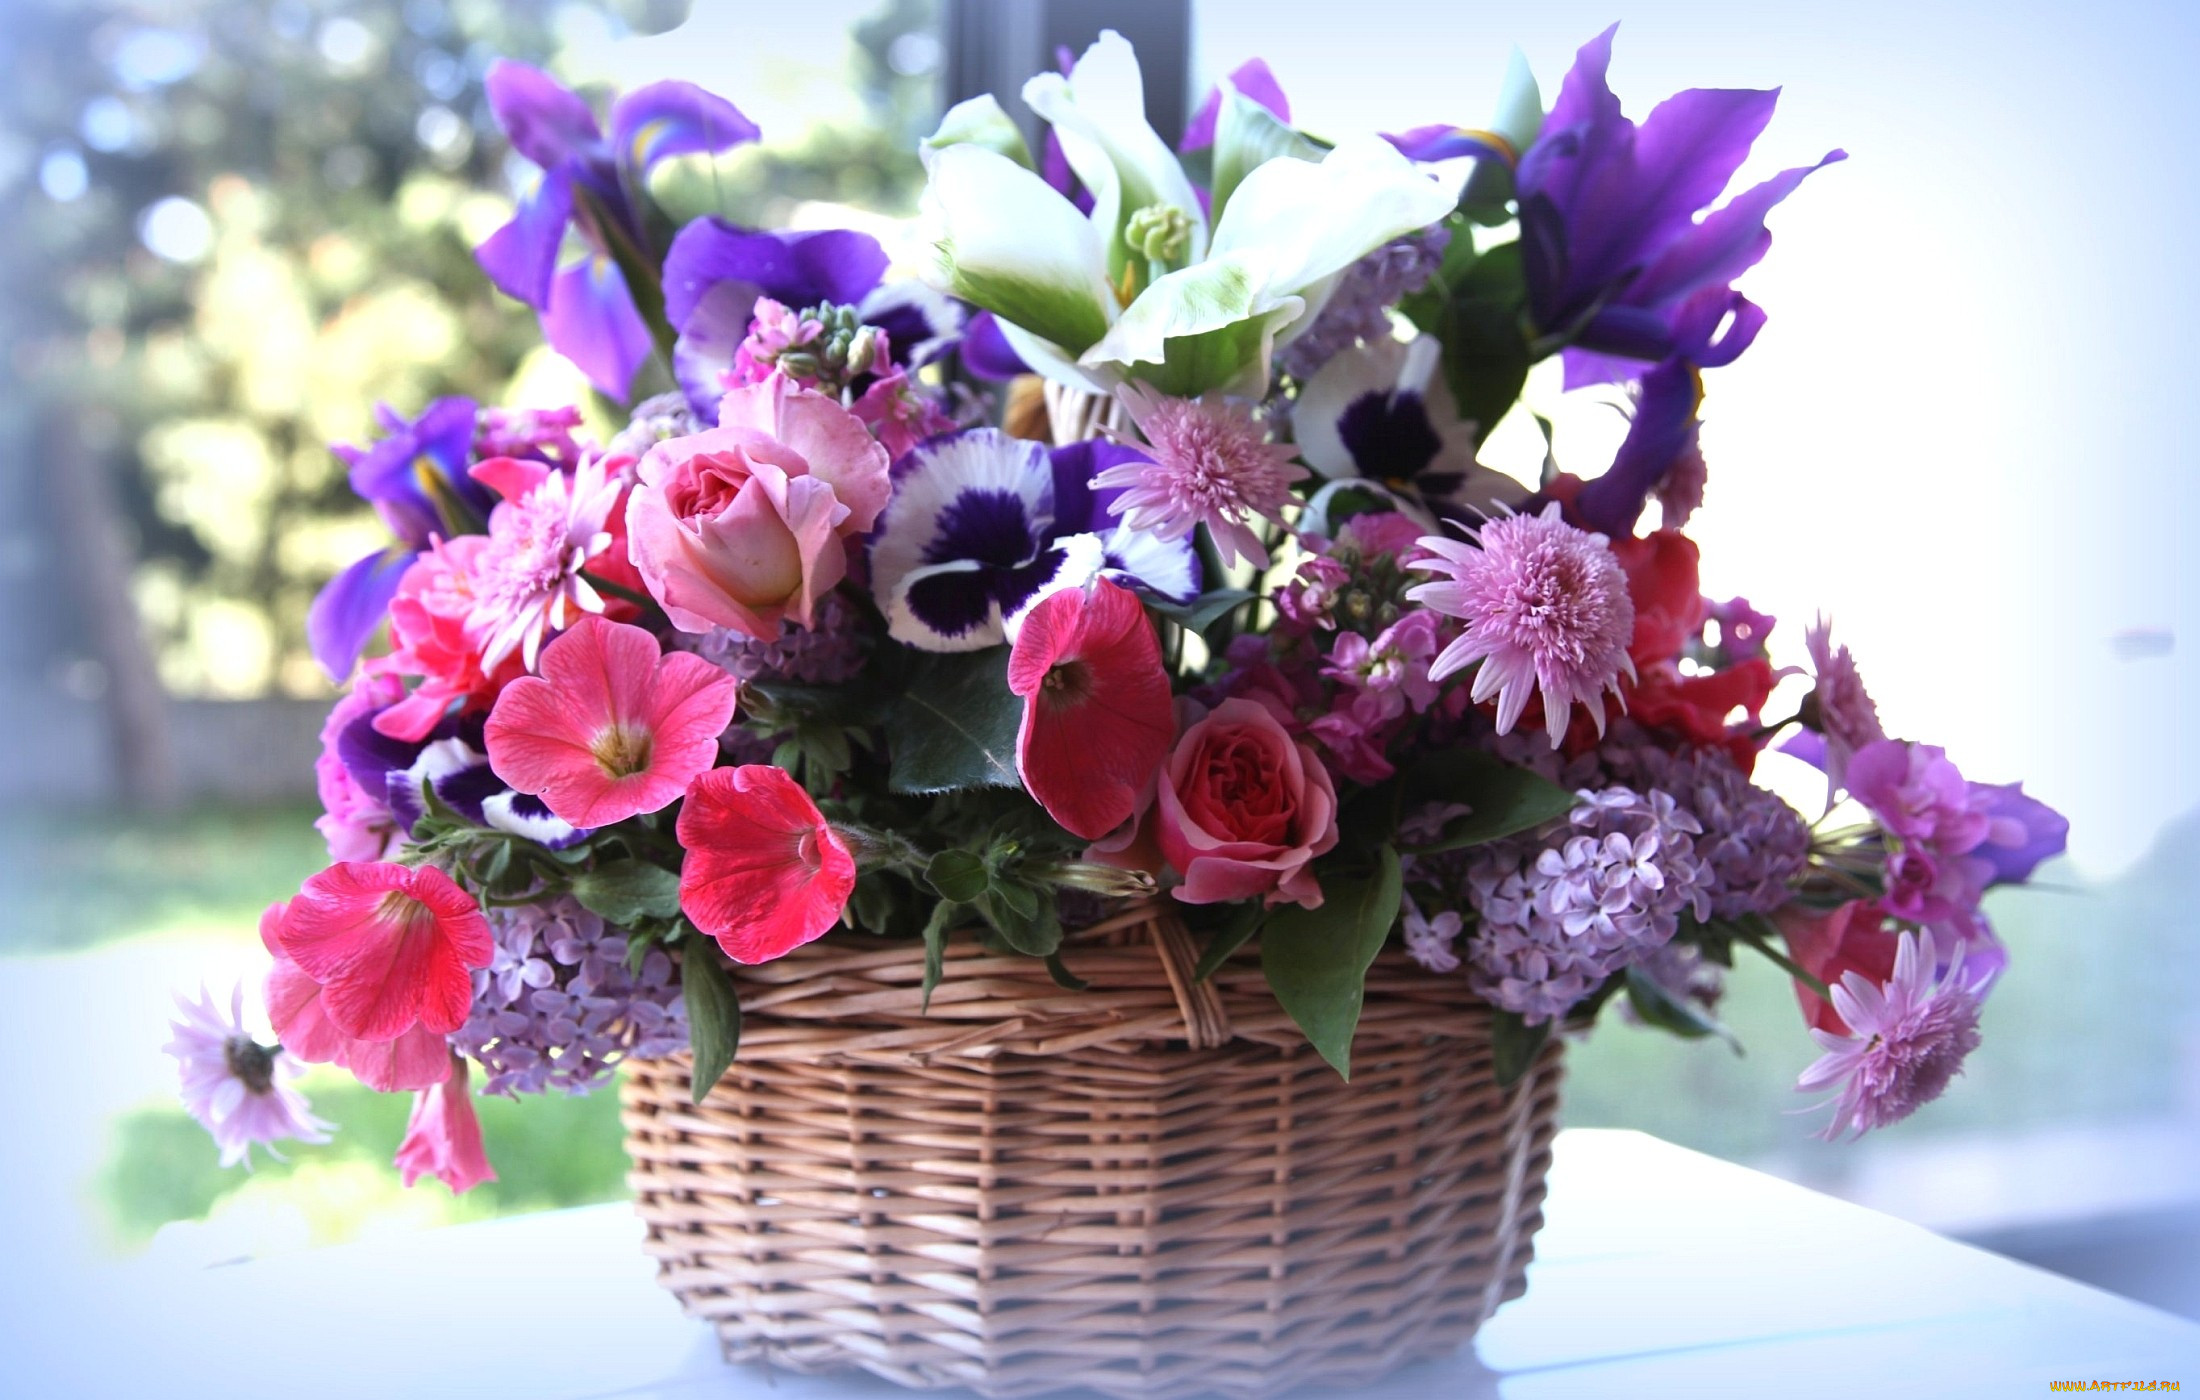 My new flowers. Красивый букет. Букет в корзинке. Корзина с цветами. Корзина с весенними цветами.